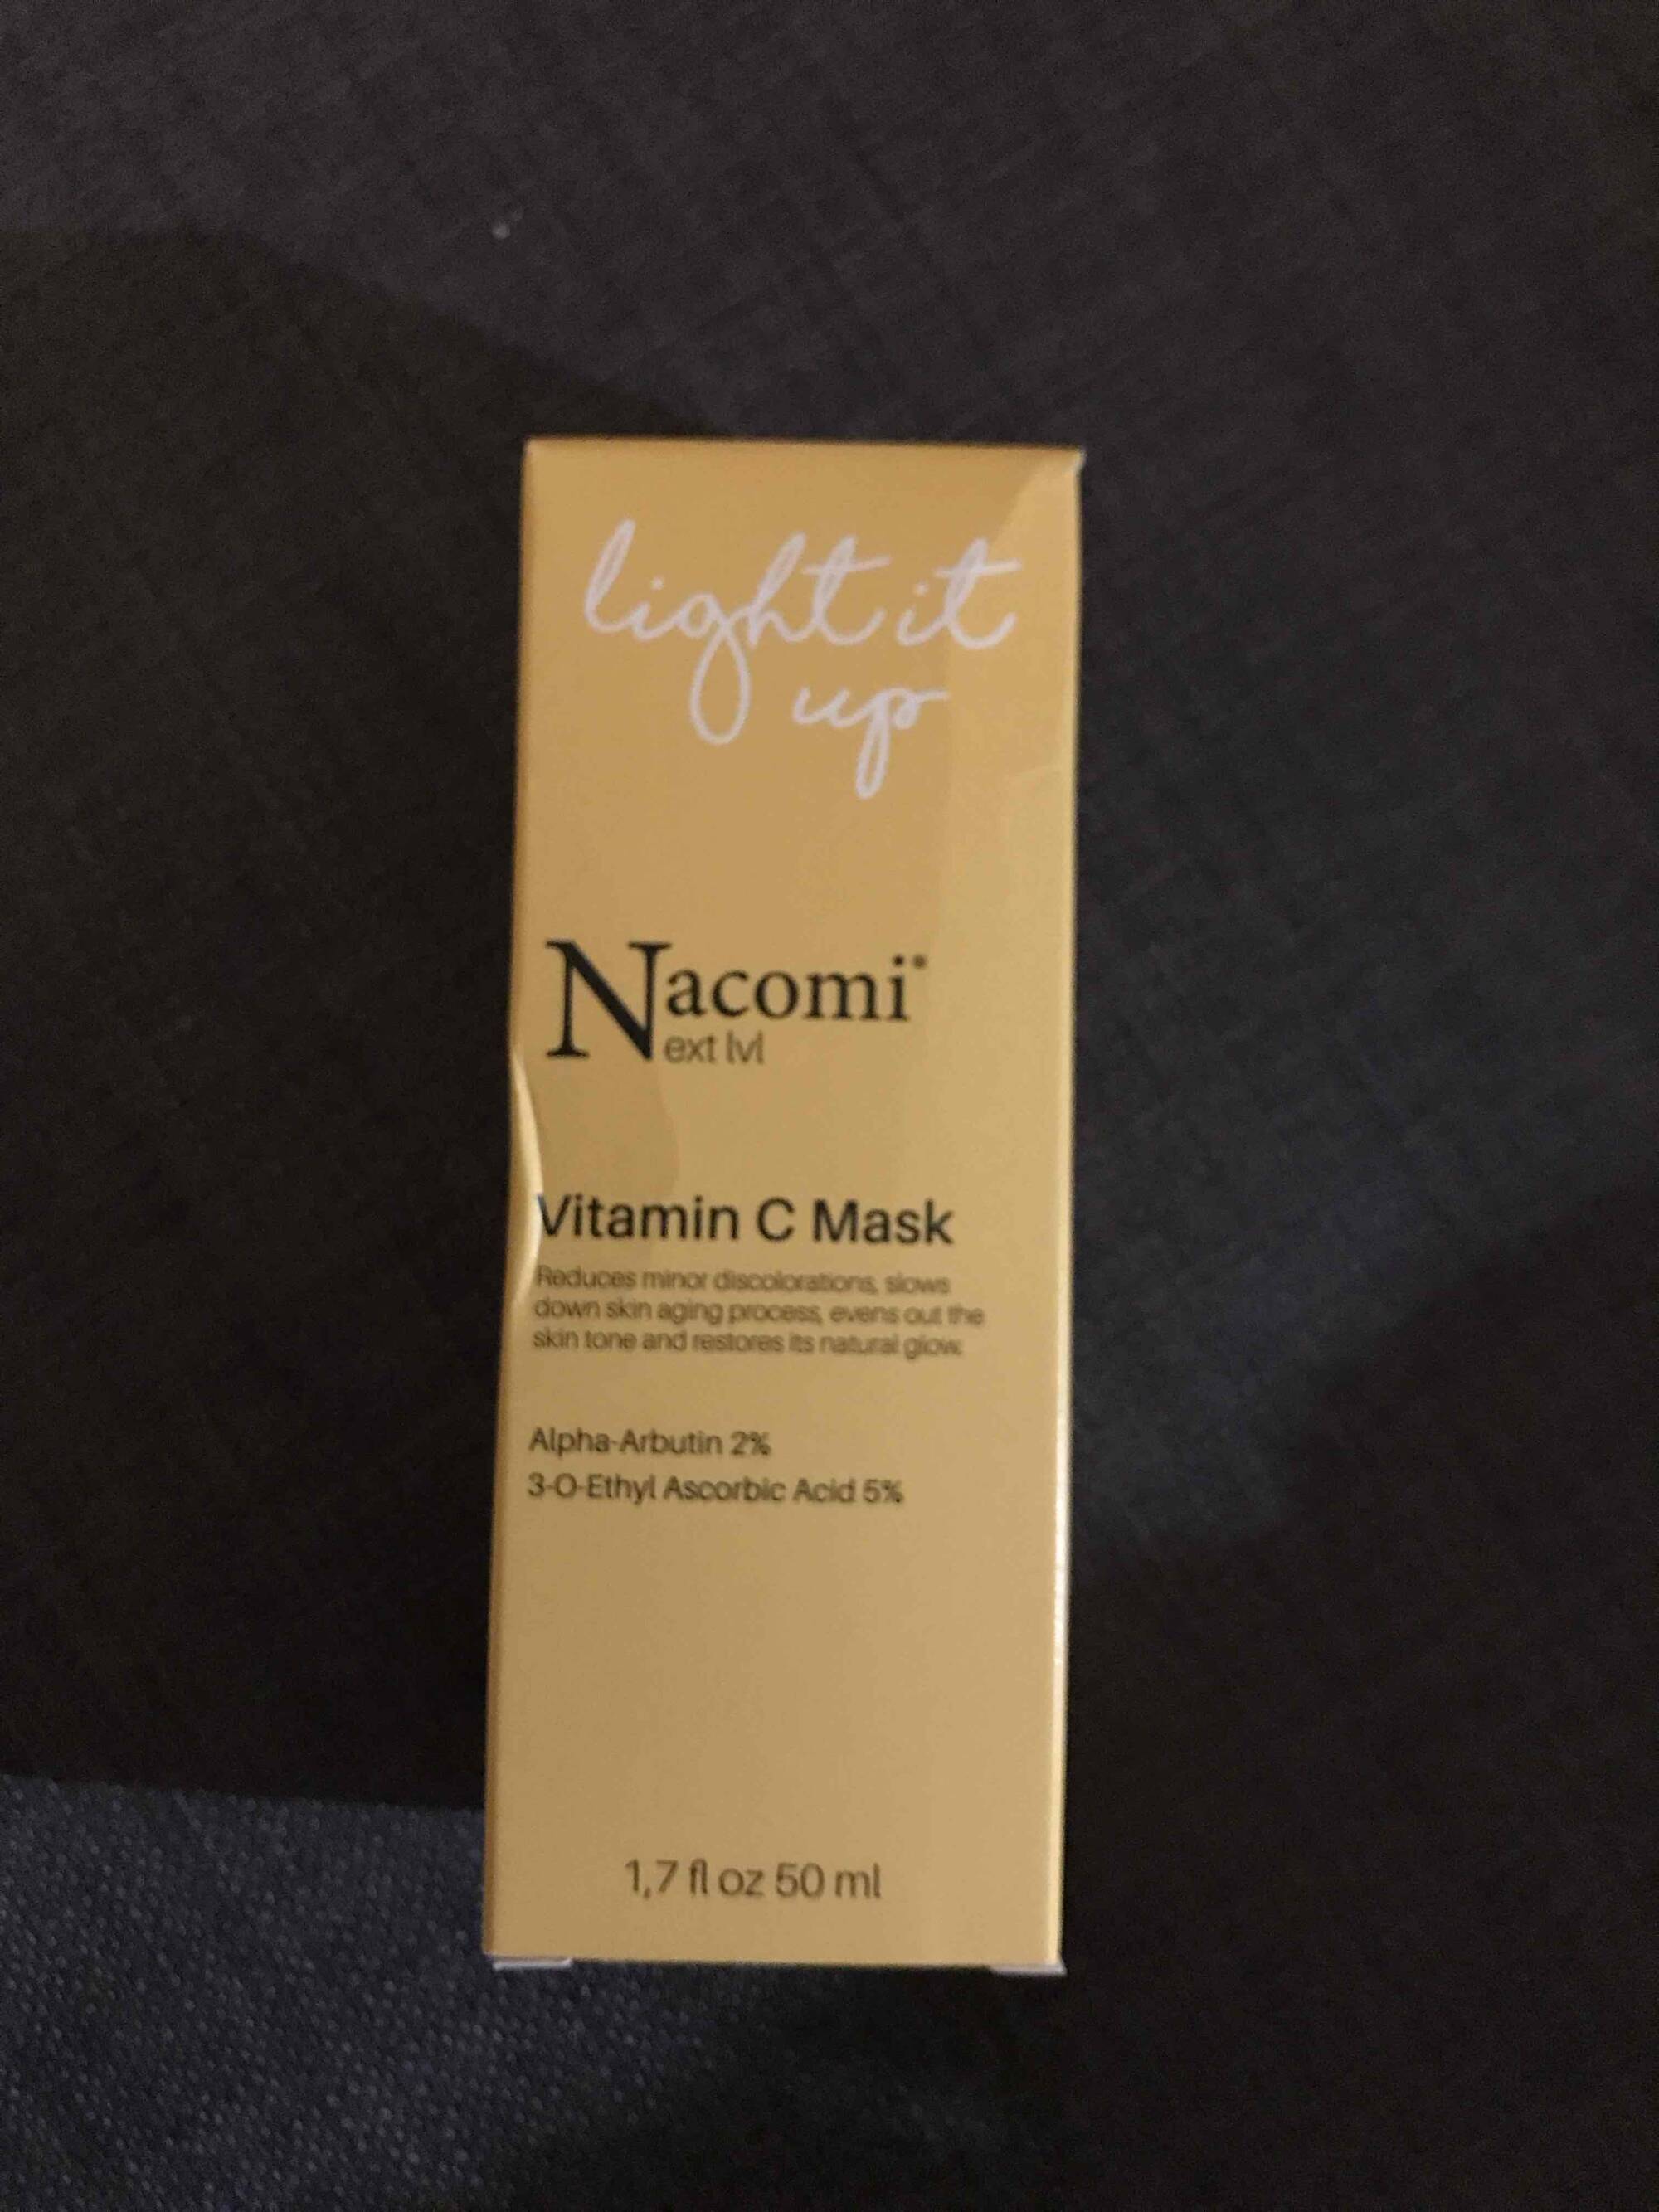 NACOMI - Next level - Vitamin C mask